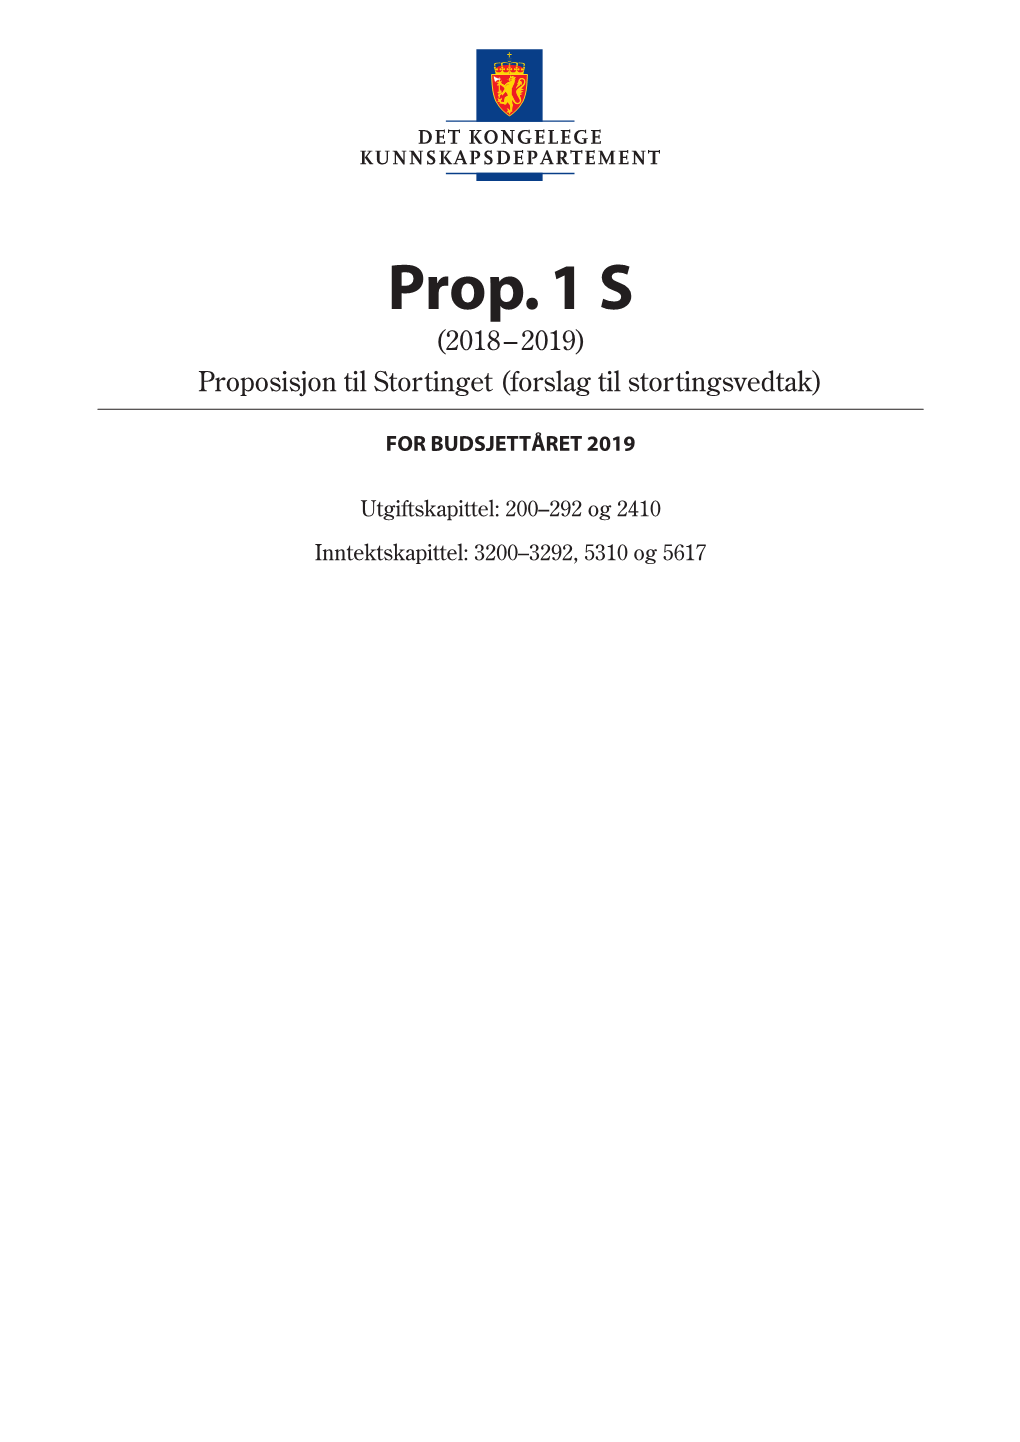 Prop. 1 S (2018-2019) Proposisjon Til Stortinget